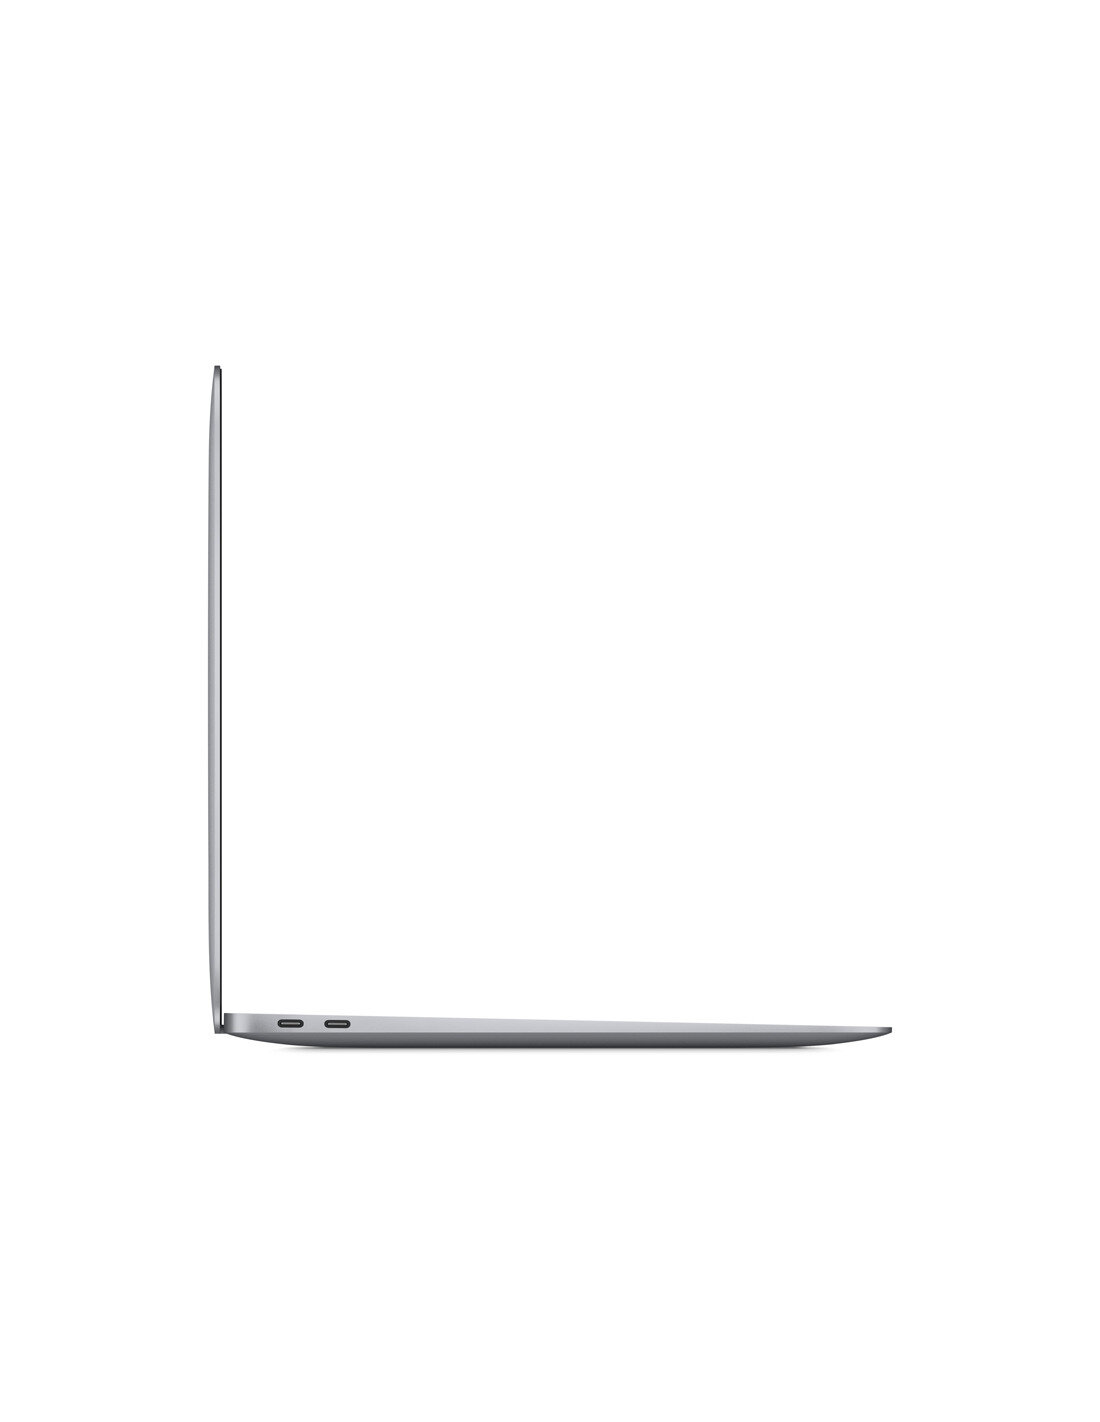 macbook-air-13-m1-2020-8-core-cpu-256-gb-space-gray (1)